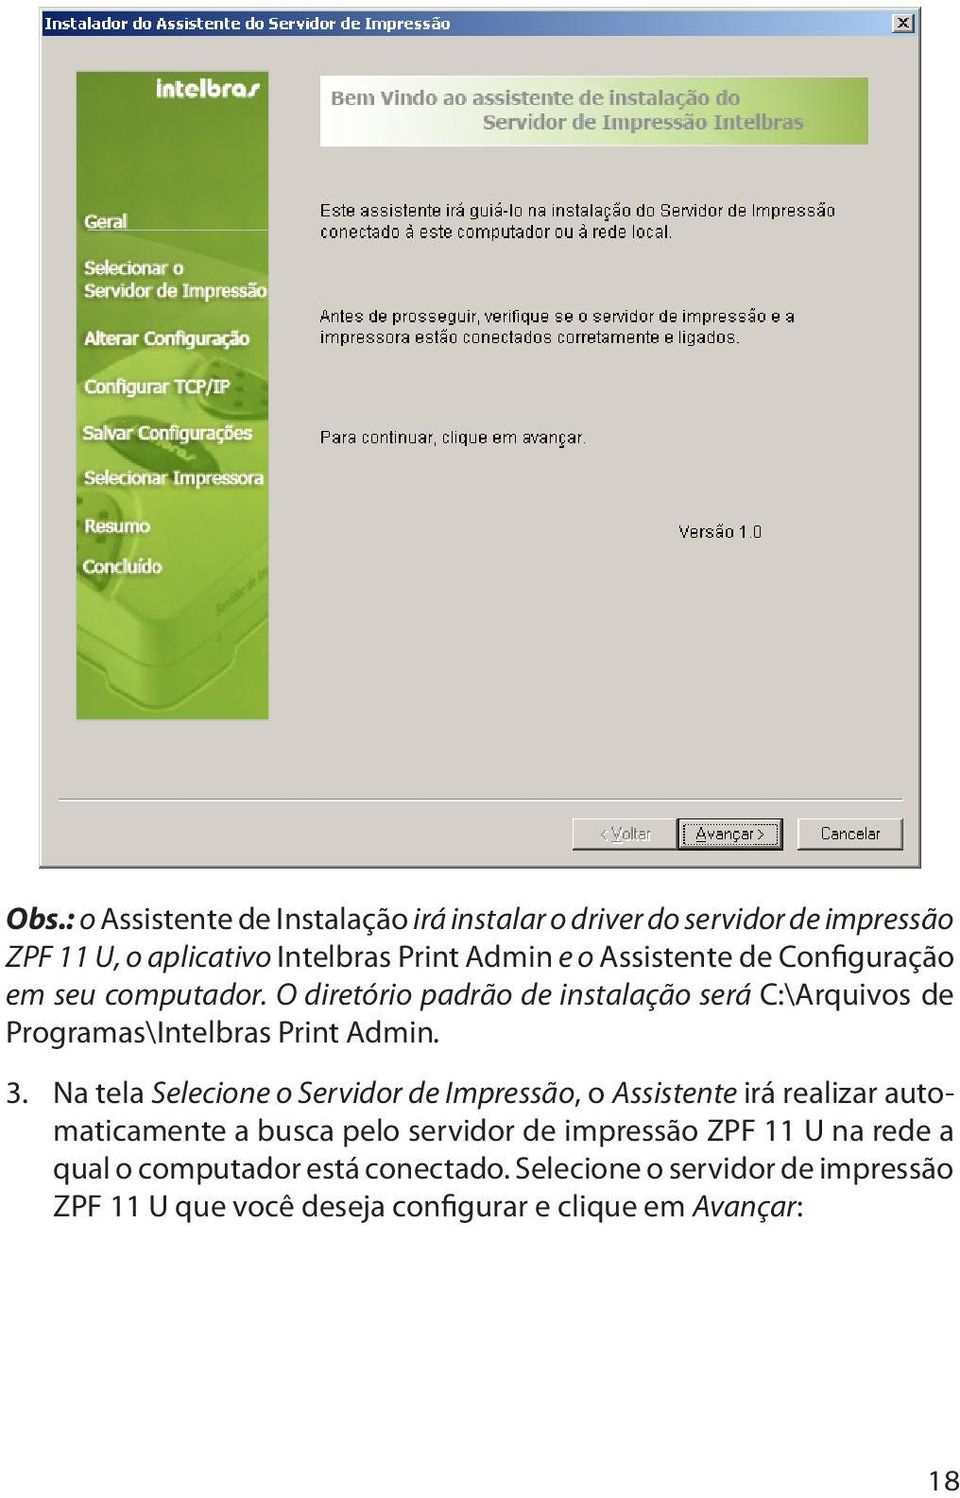 3. Na tela Selecione o Servidor de Impressão, o Assistente irá realizar automaticamente a busca pelo servidor de impressão ZPF 11 U